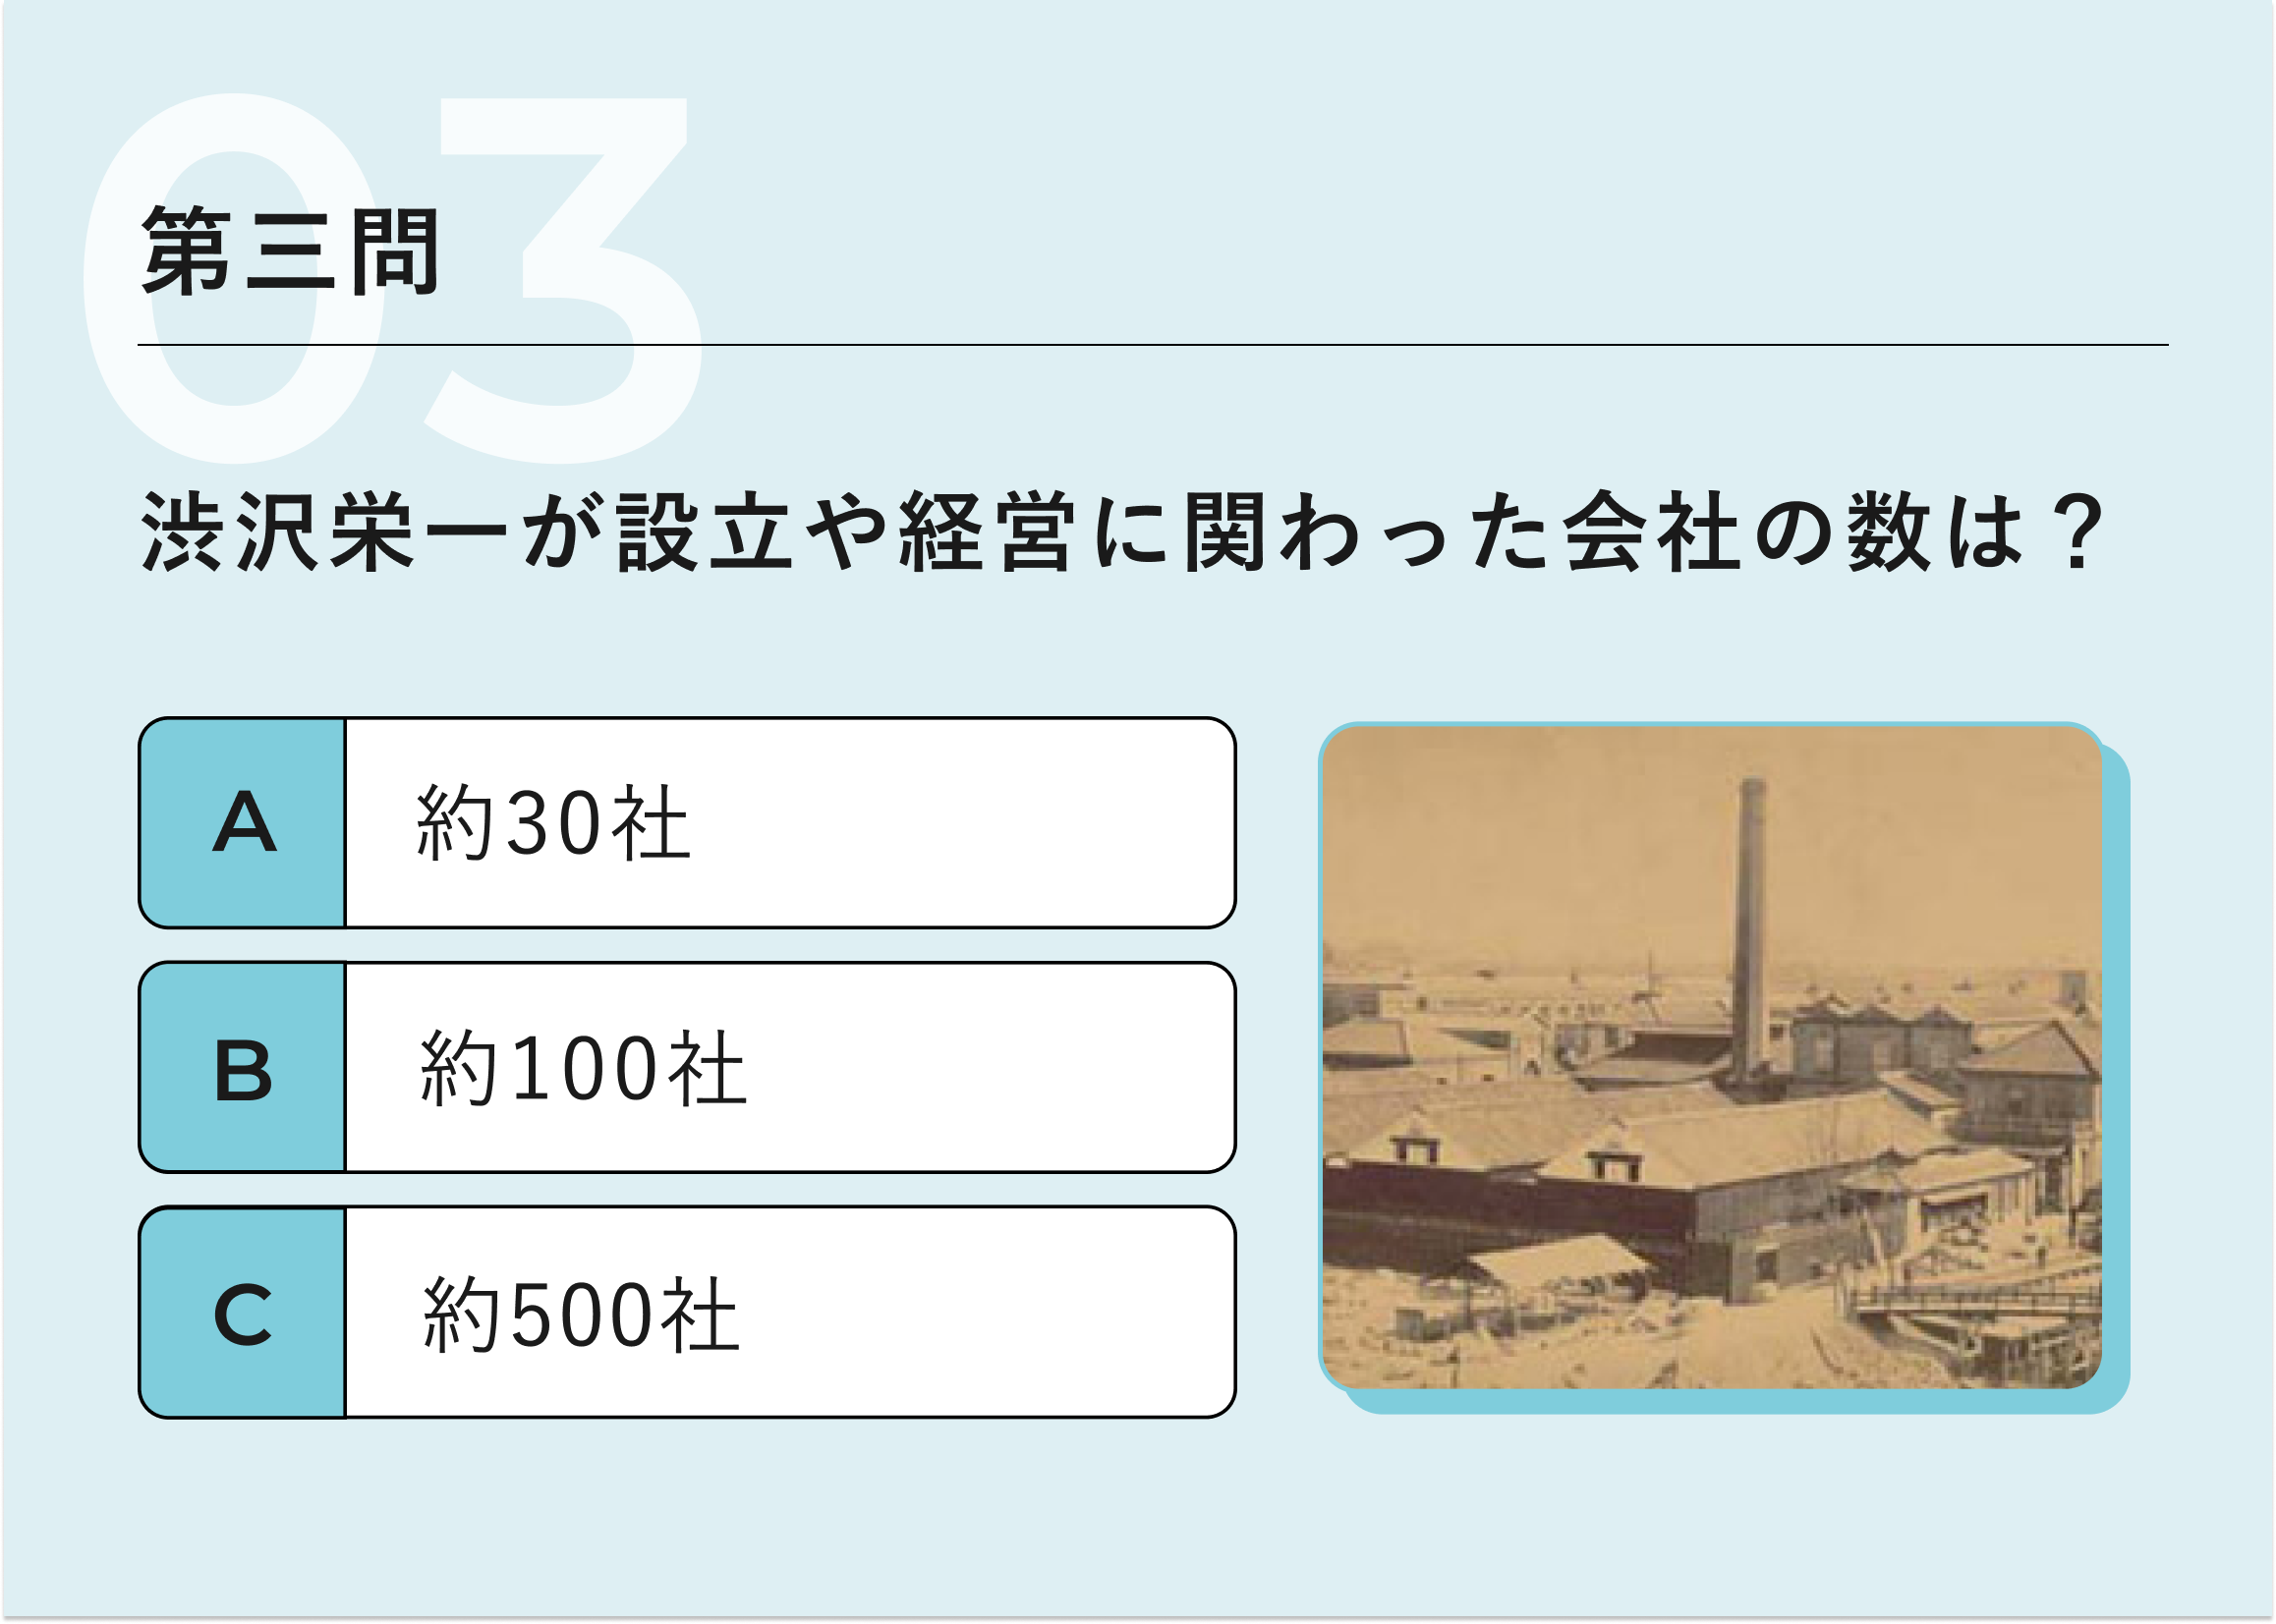 第三問：渋沢栄一が設立や経営に関わった会社の数は?　A約30社　B約100社　C約500社